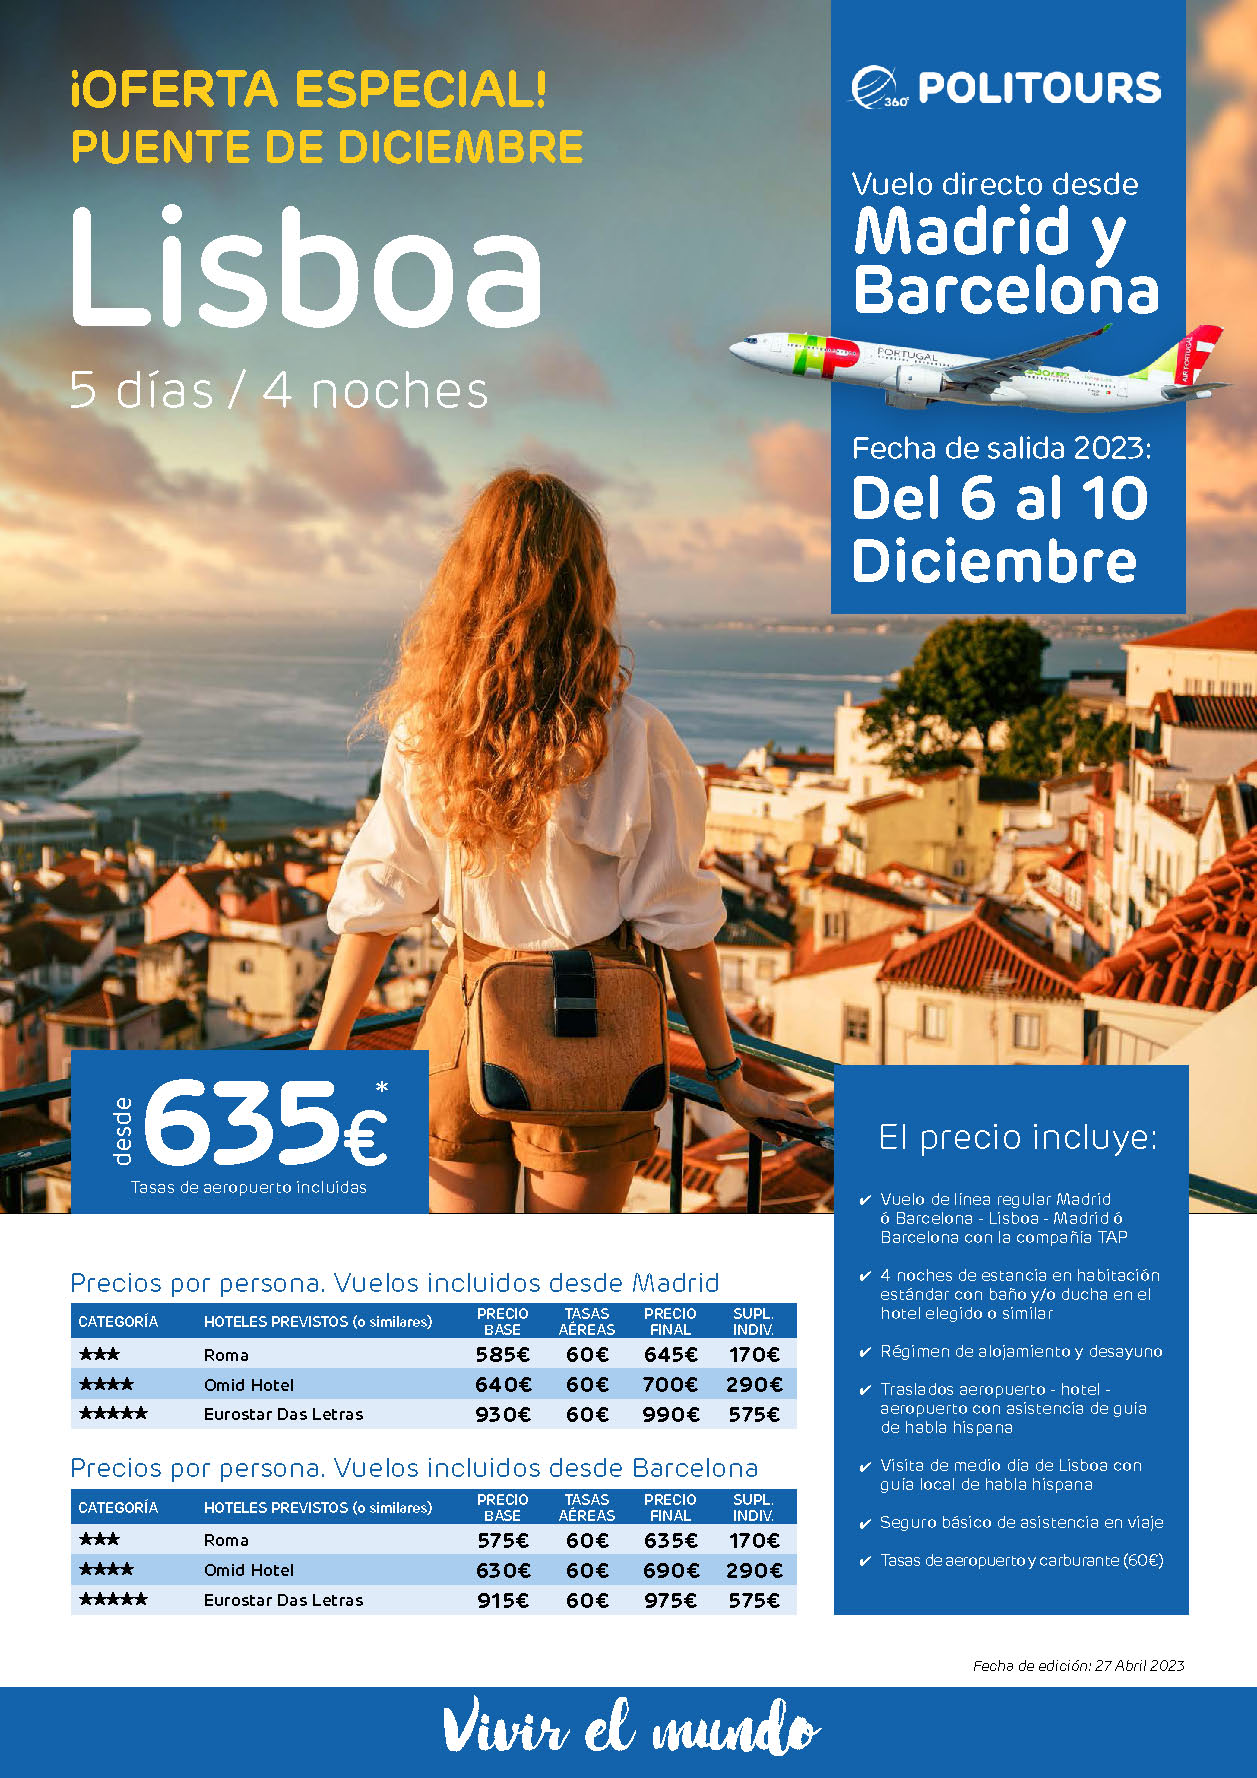 Oferta Politours Puente de Diciembre 2023 Estancia en Lisboa 5 dias salida 6 diciembre en vuelo directo desde Madrid y Barcelona